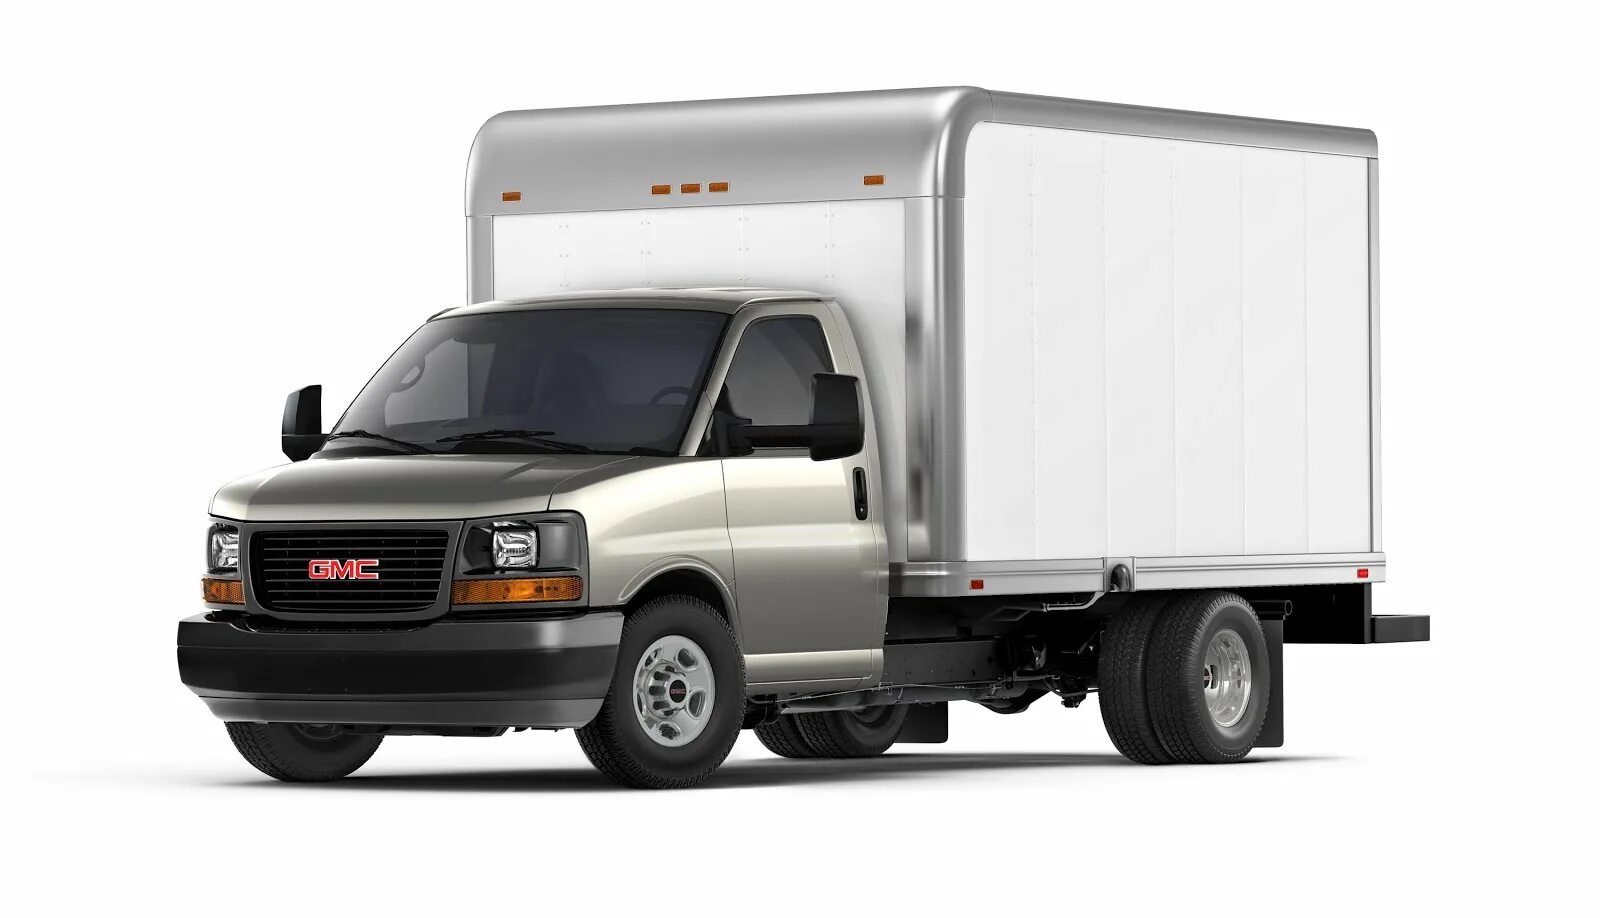 GMC Savana Box Truck. GMC Savana 3500. GMC 3500 фургон. GMC Cargo van.